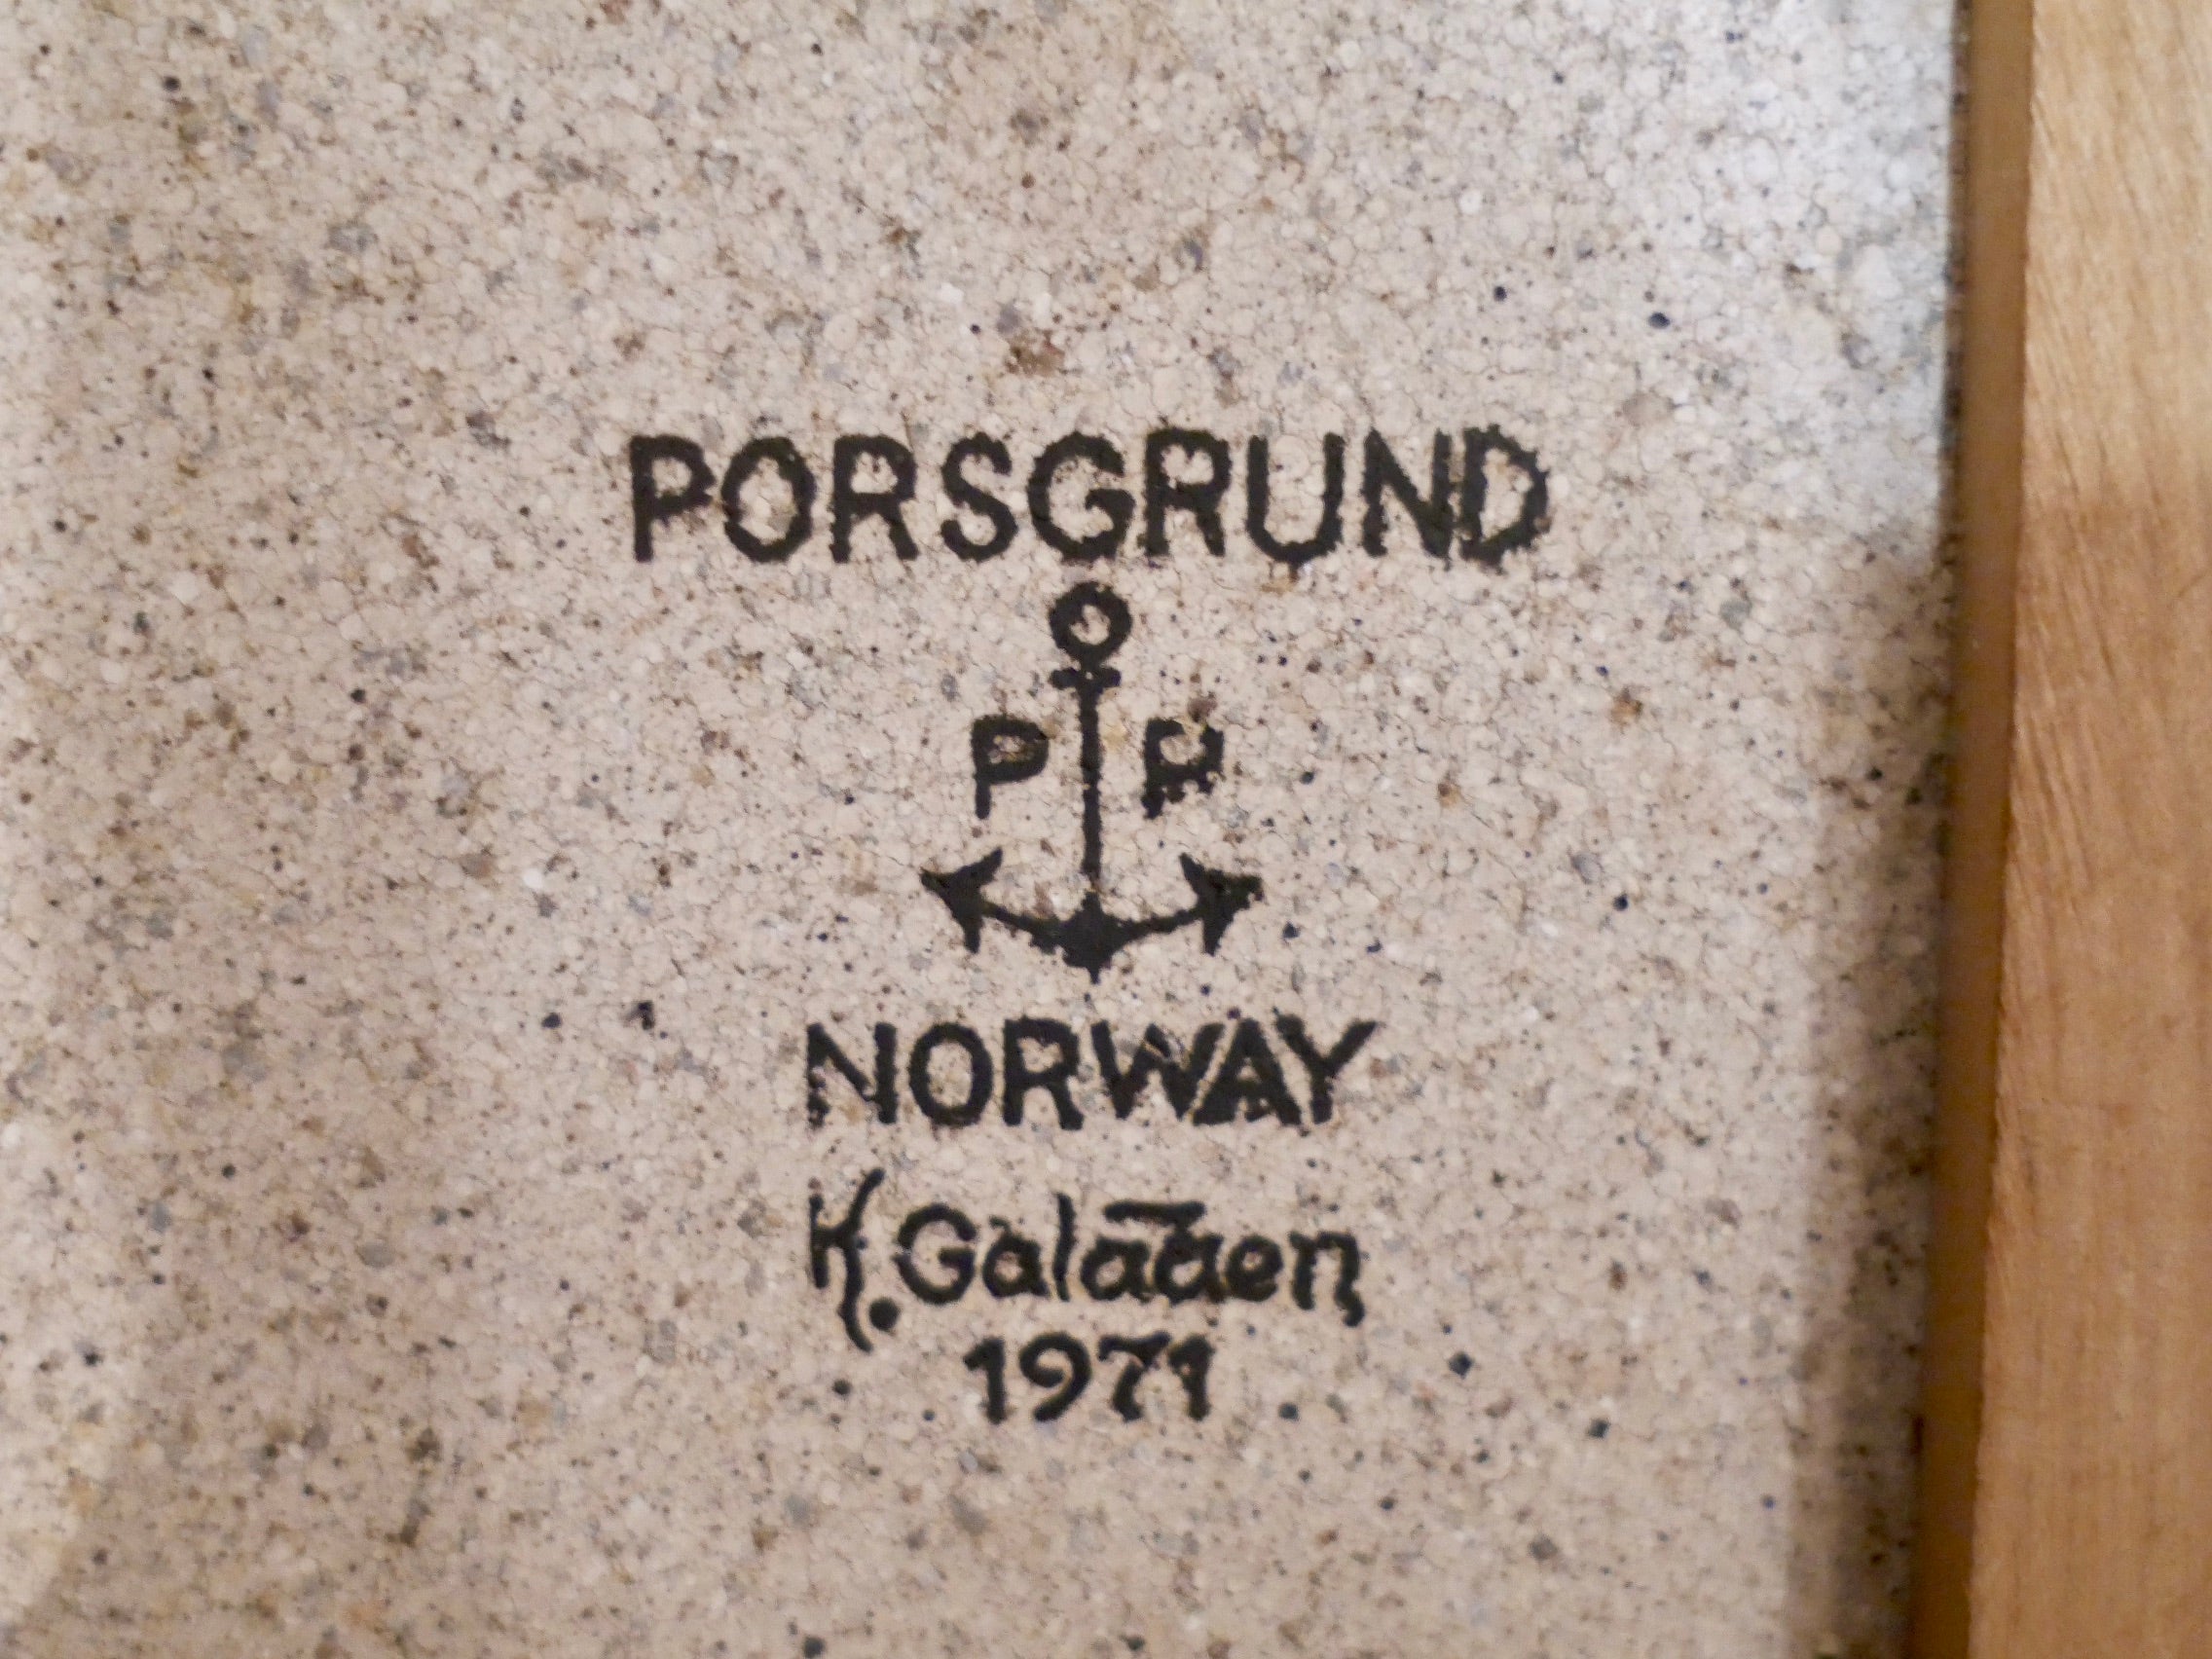 PORSGRUND 陶板 ウォールプレート 1971年製 Konrad Galaaen ポルシュグルン コンラード・ガレーン 北欧 ノルウェー  Norway